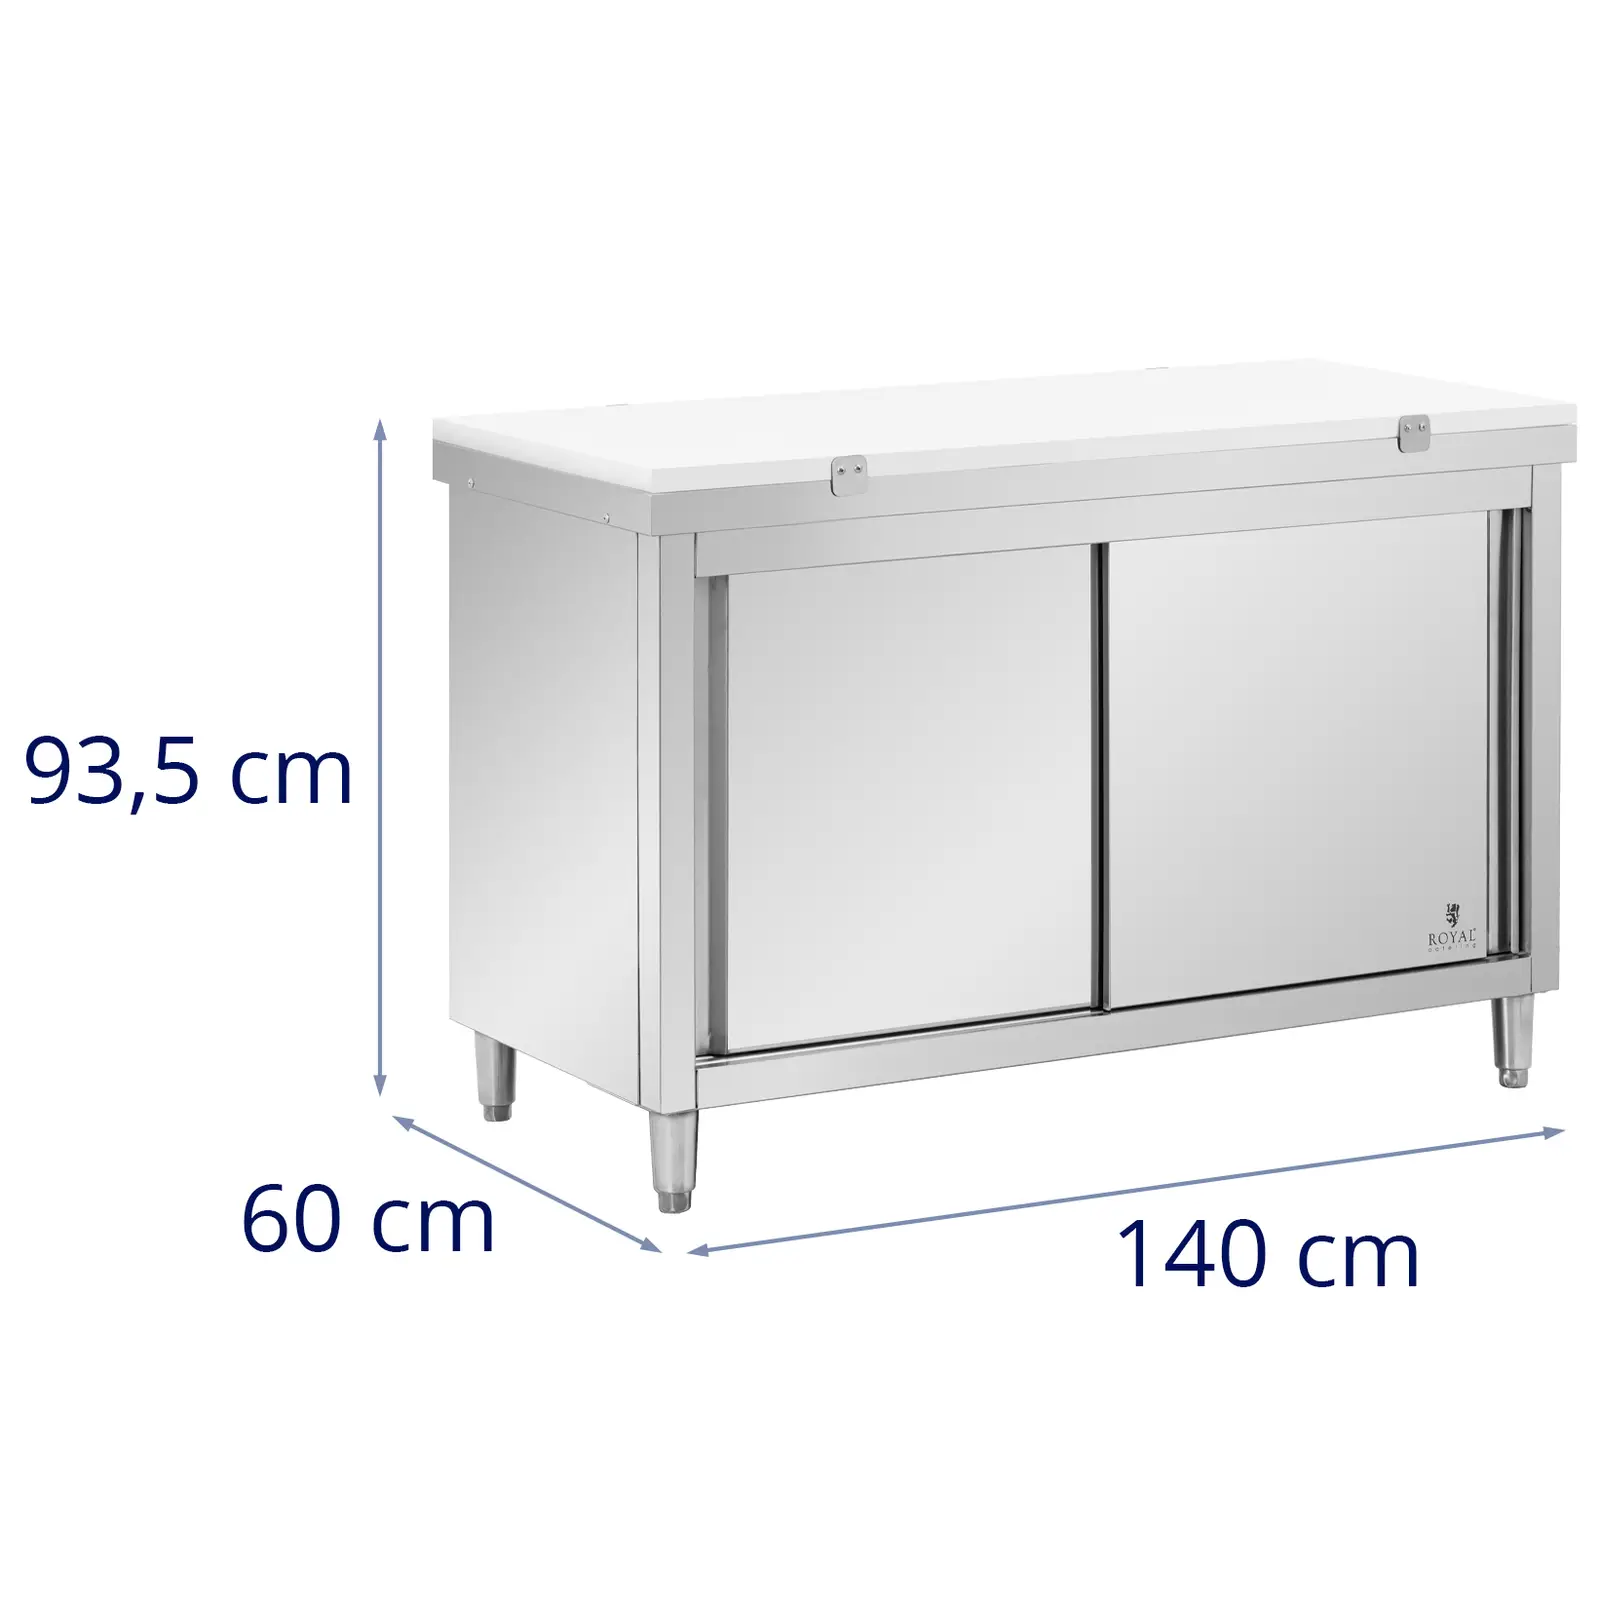 Rozsdamentes acél munkaszekrény - 140 x 60 cm - 500 kg terhelhetőség - tartalmazza Vágódeszka - Royal Catering